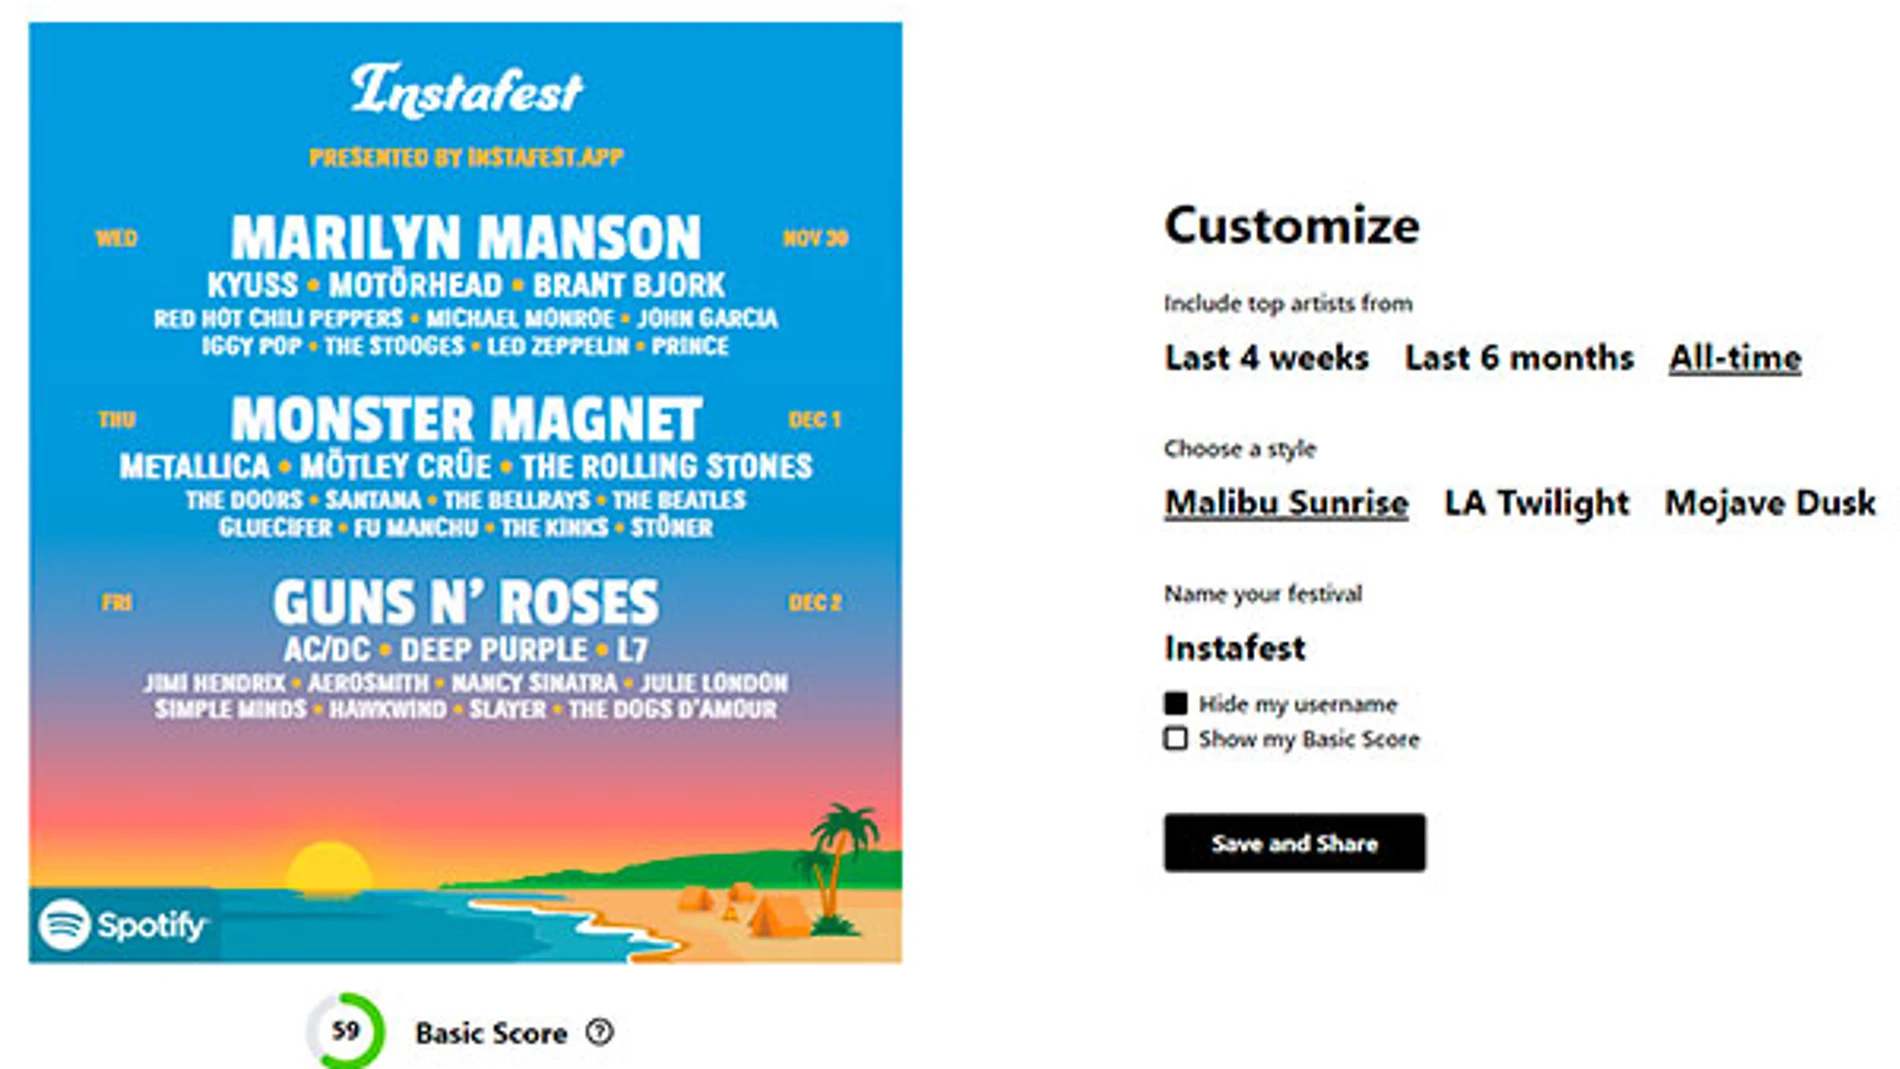 Opciones de personalización del cartel en la web de Instafest.